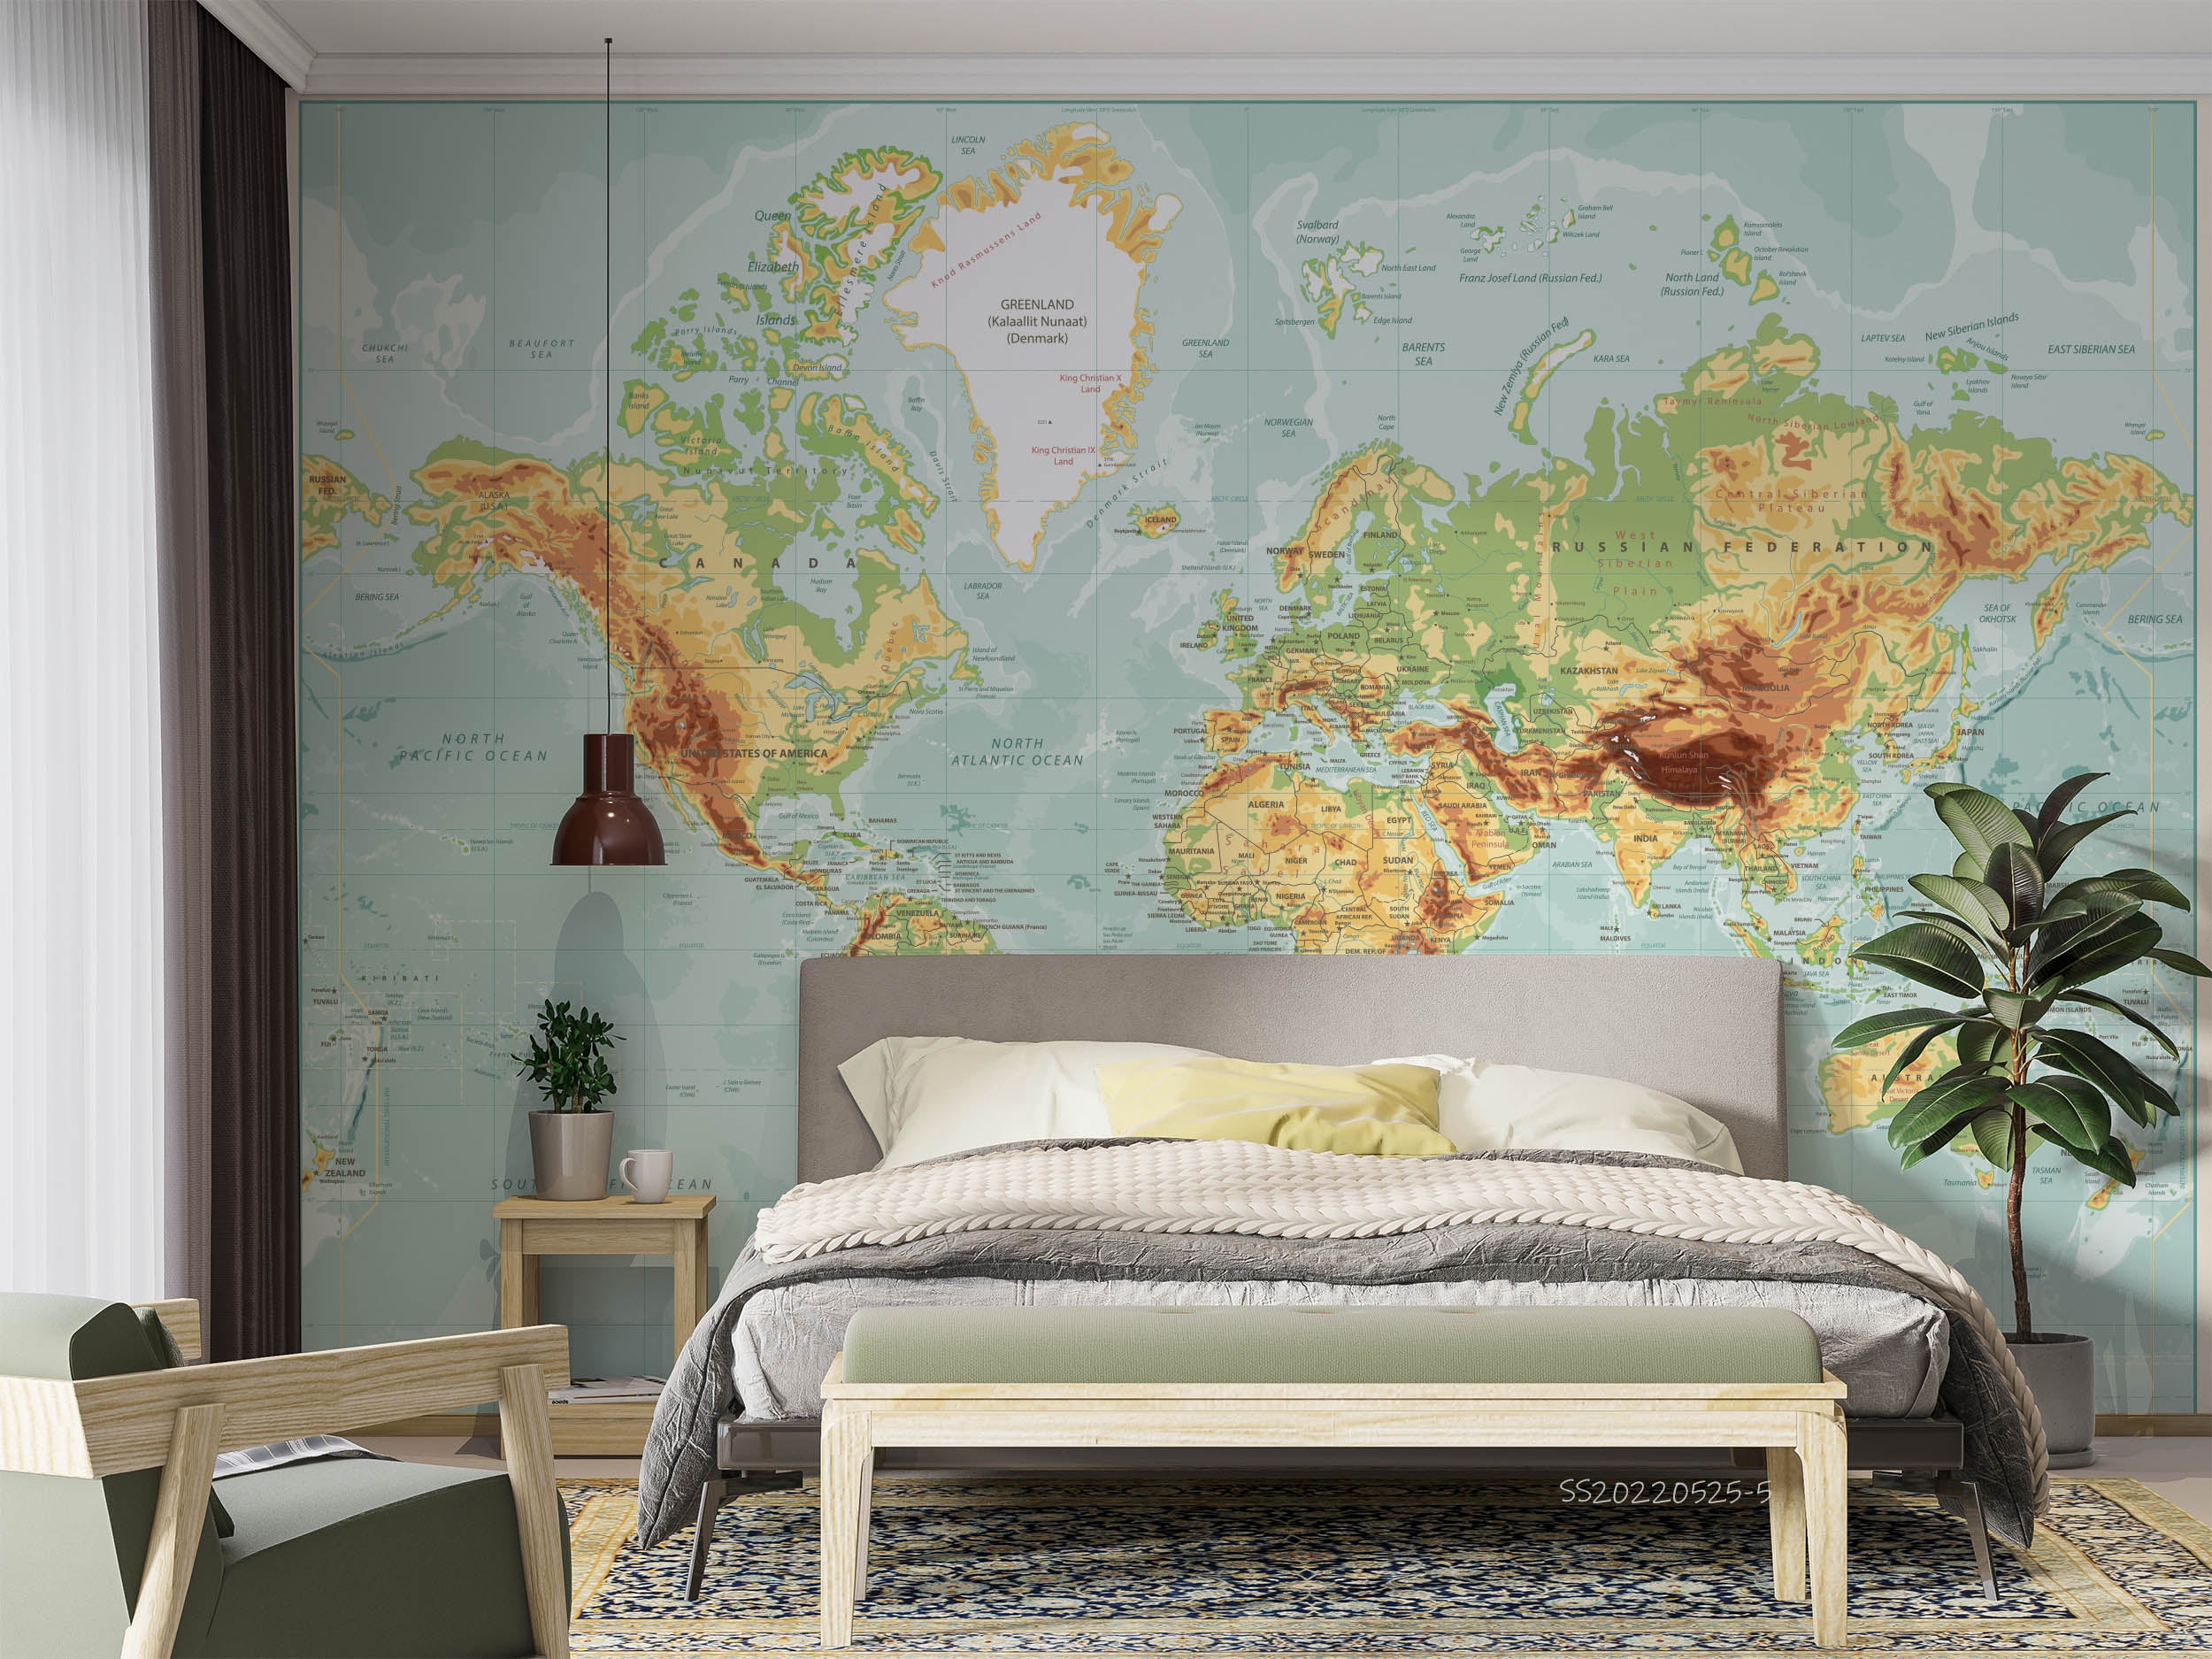 3D Detailed World Map Wall Mural Wallpaper GD 976- Jess Art Decoration